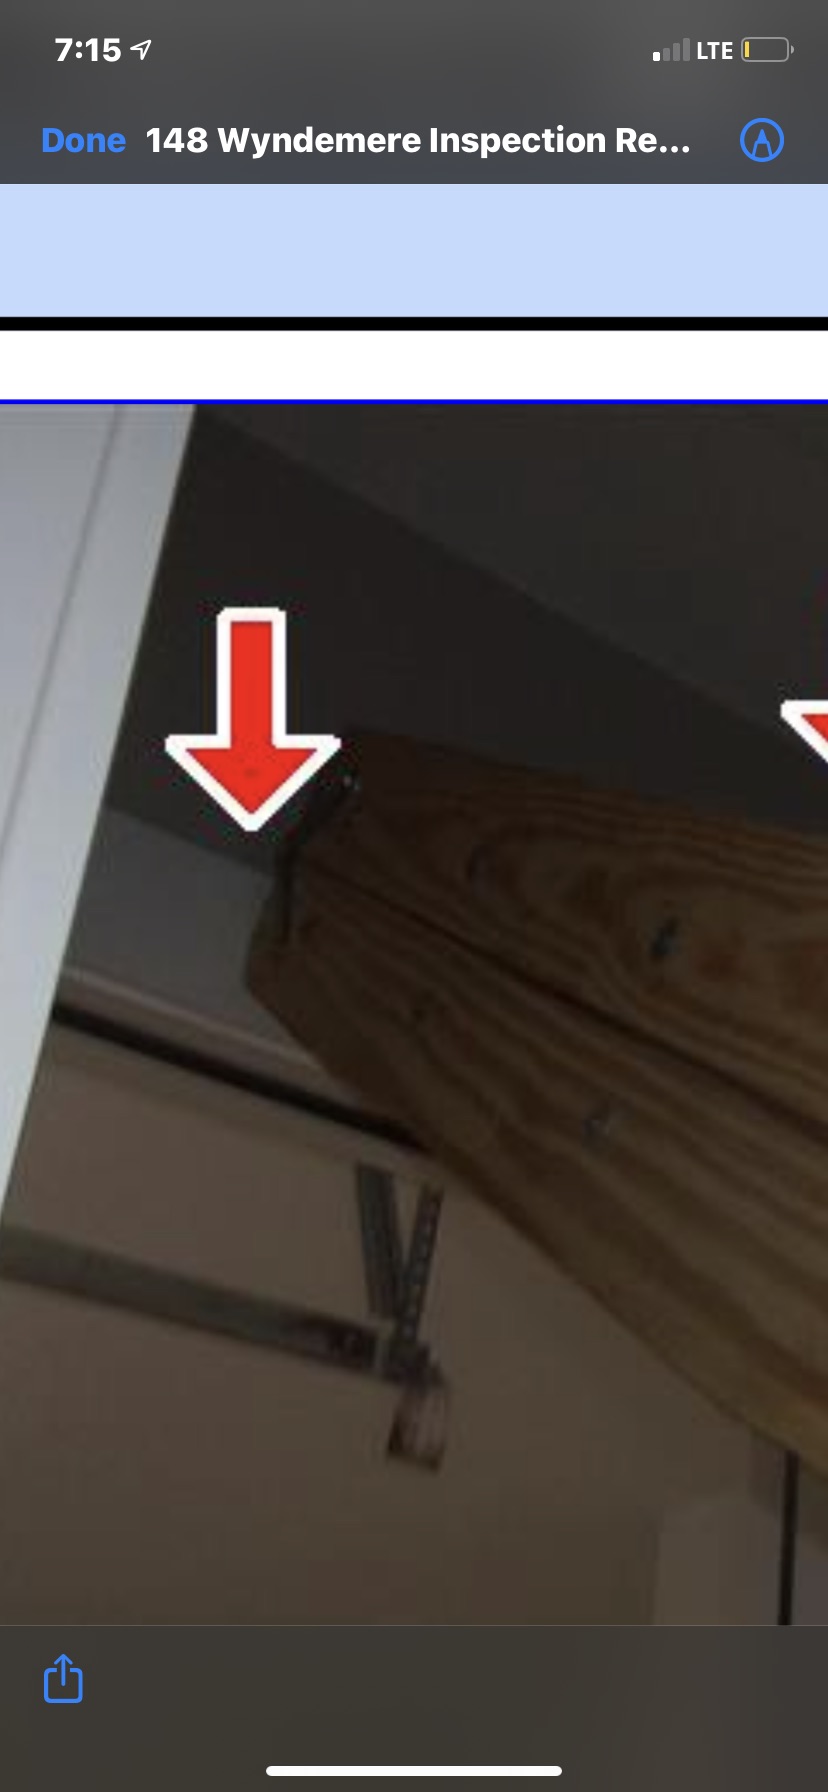 Backward installed Attic ladder hitting door frame